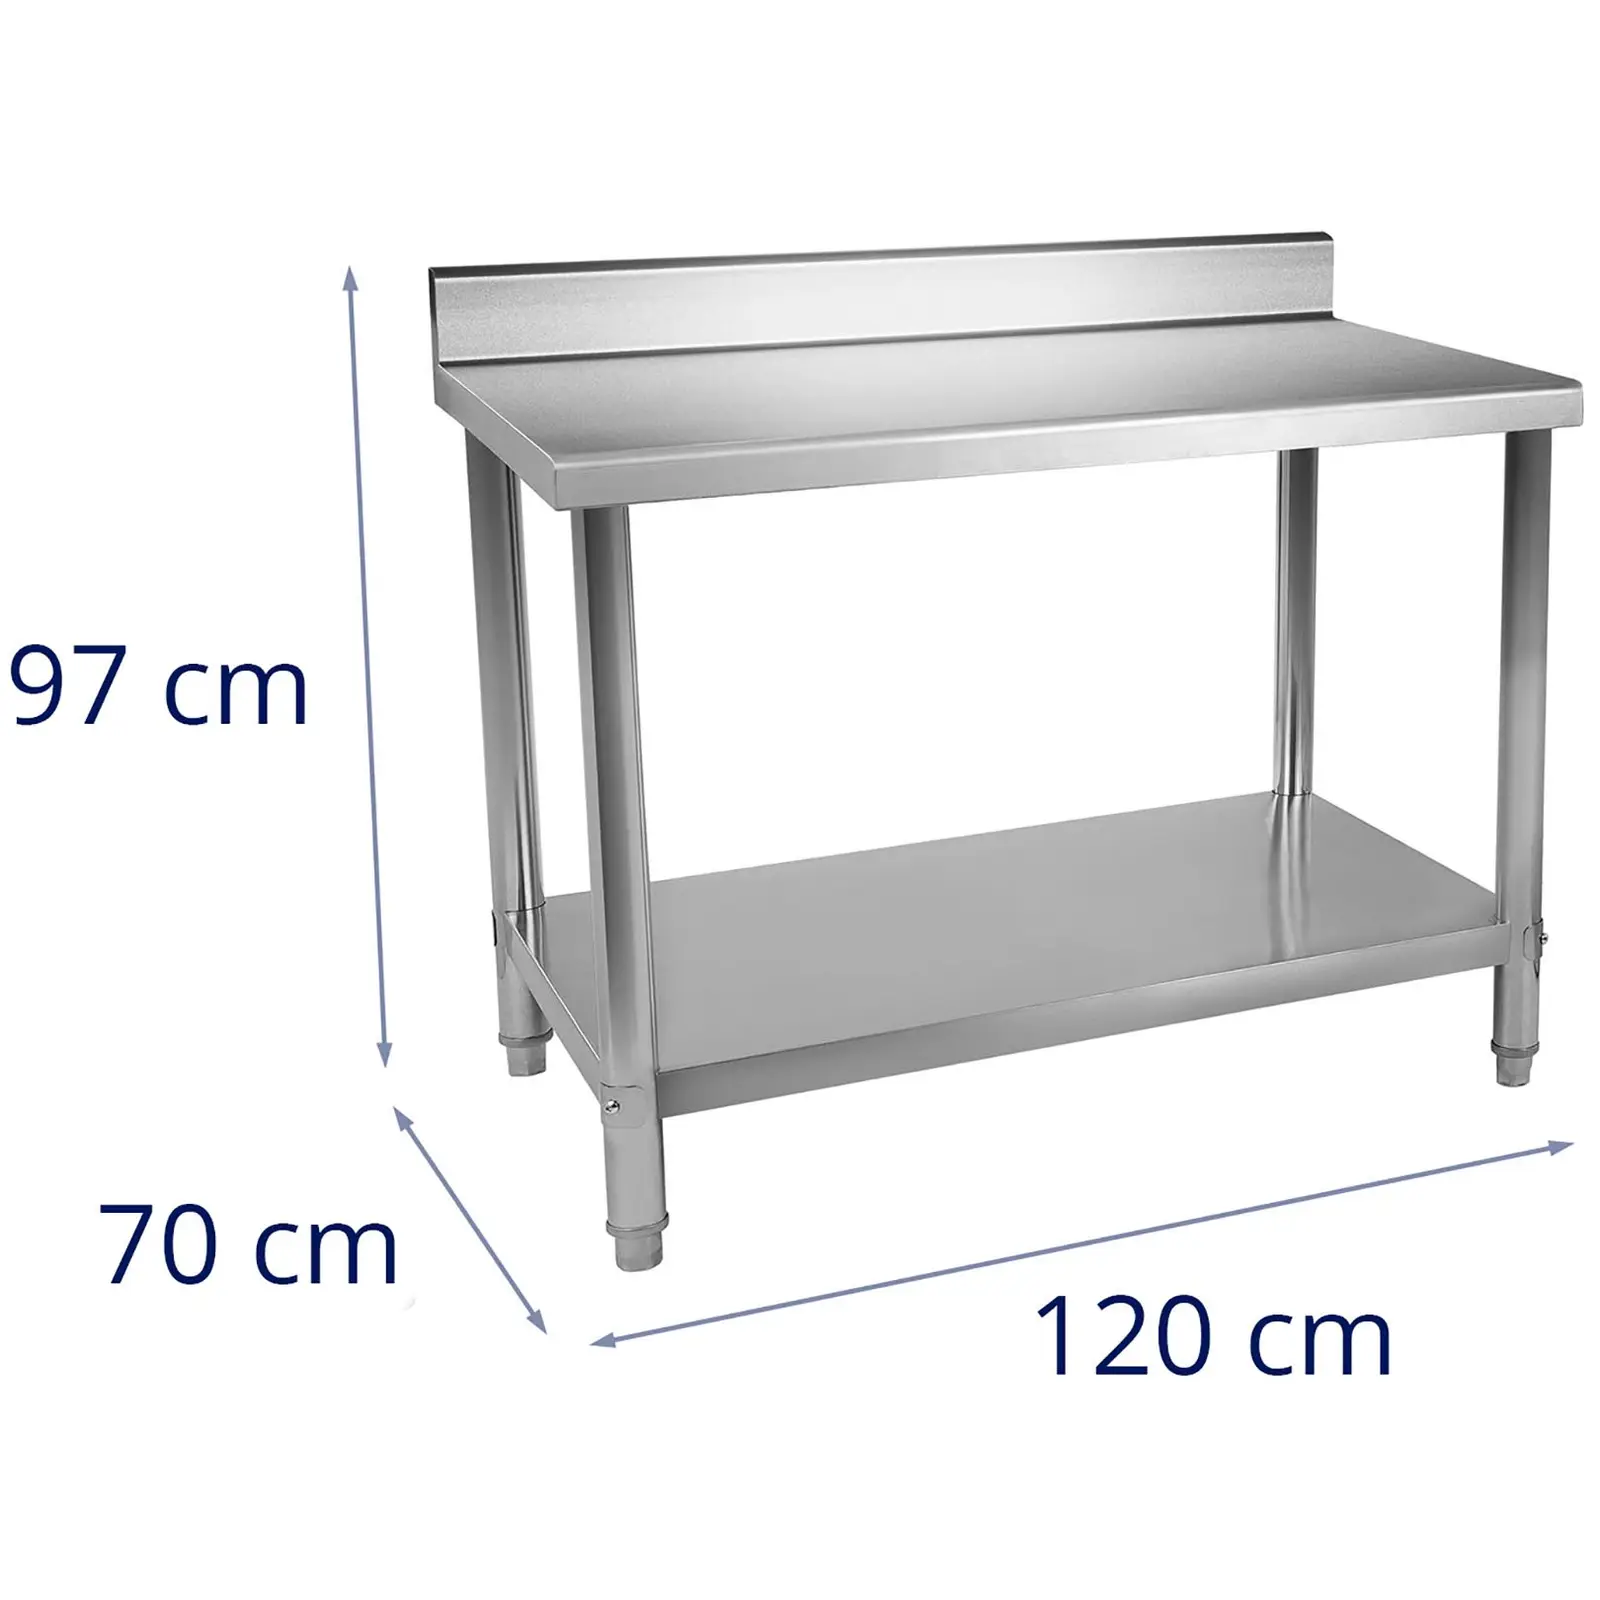 Pracovný stôl z ušľachtilej ocele - 120 x 70 cm - s lemom - 115 kg nosnosť